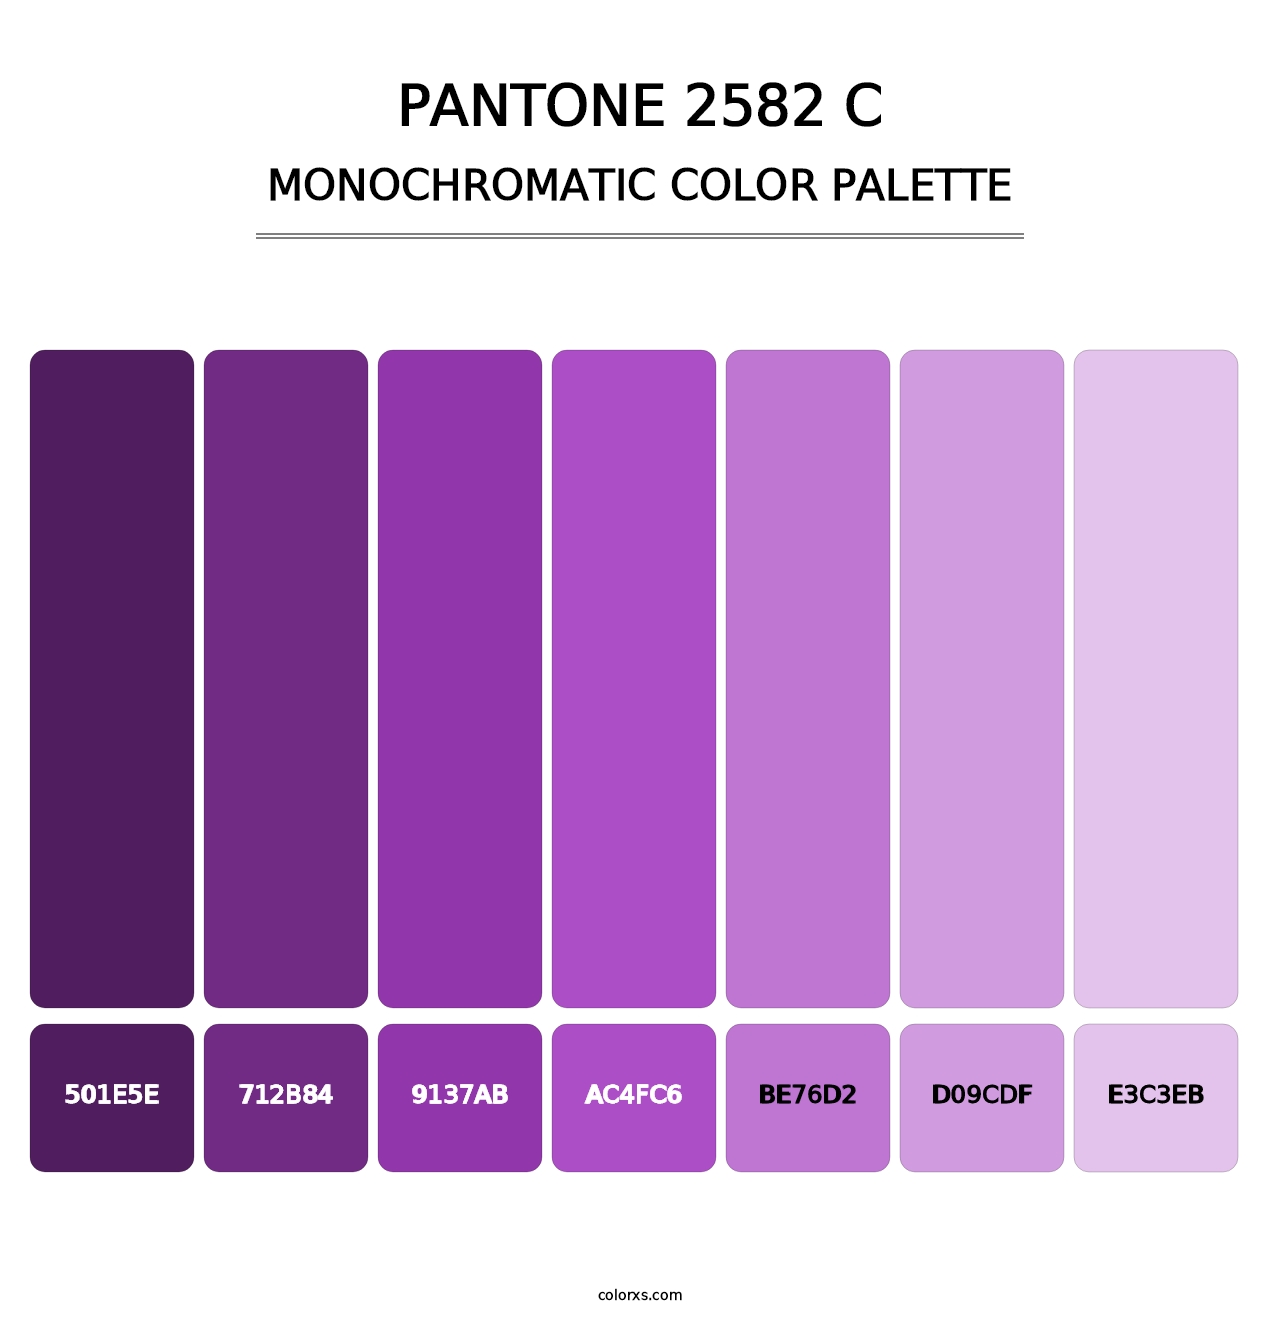 PANTONE 2582 C - Monochromatic Color Palette